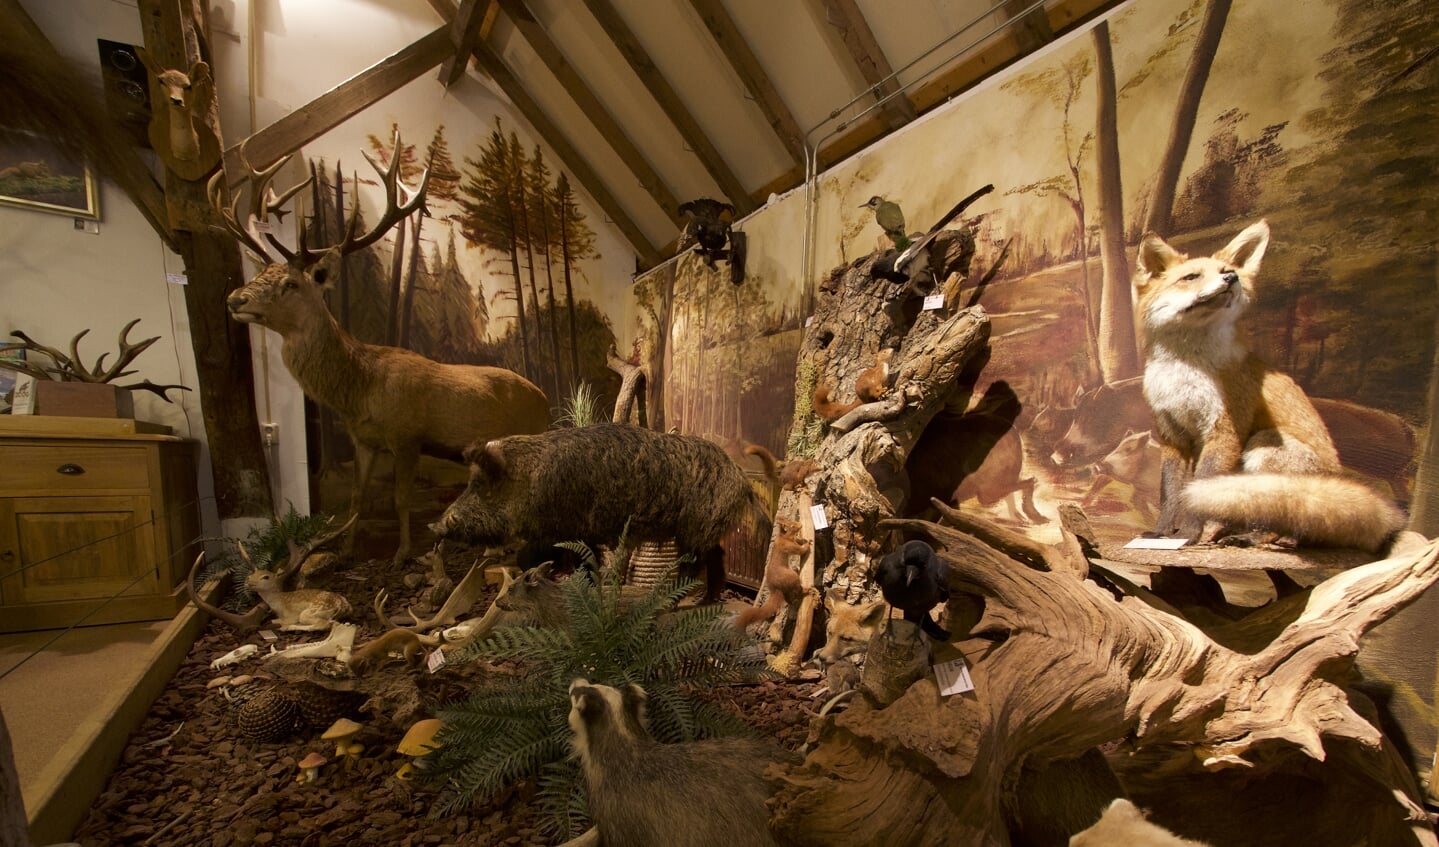 diorama in Natuurcentrum Veluwe